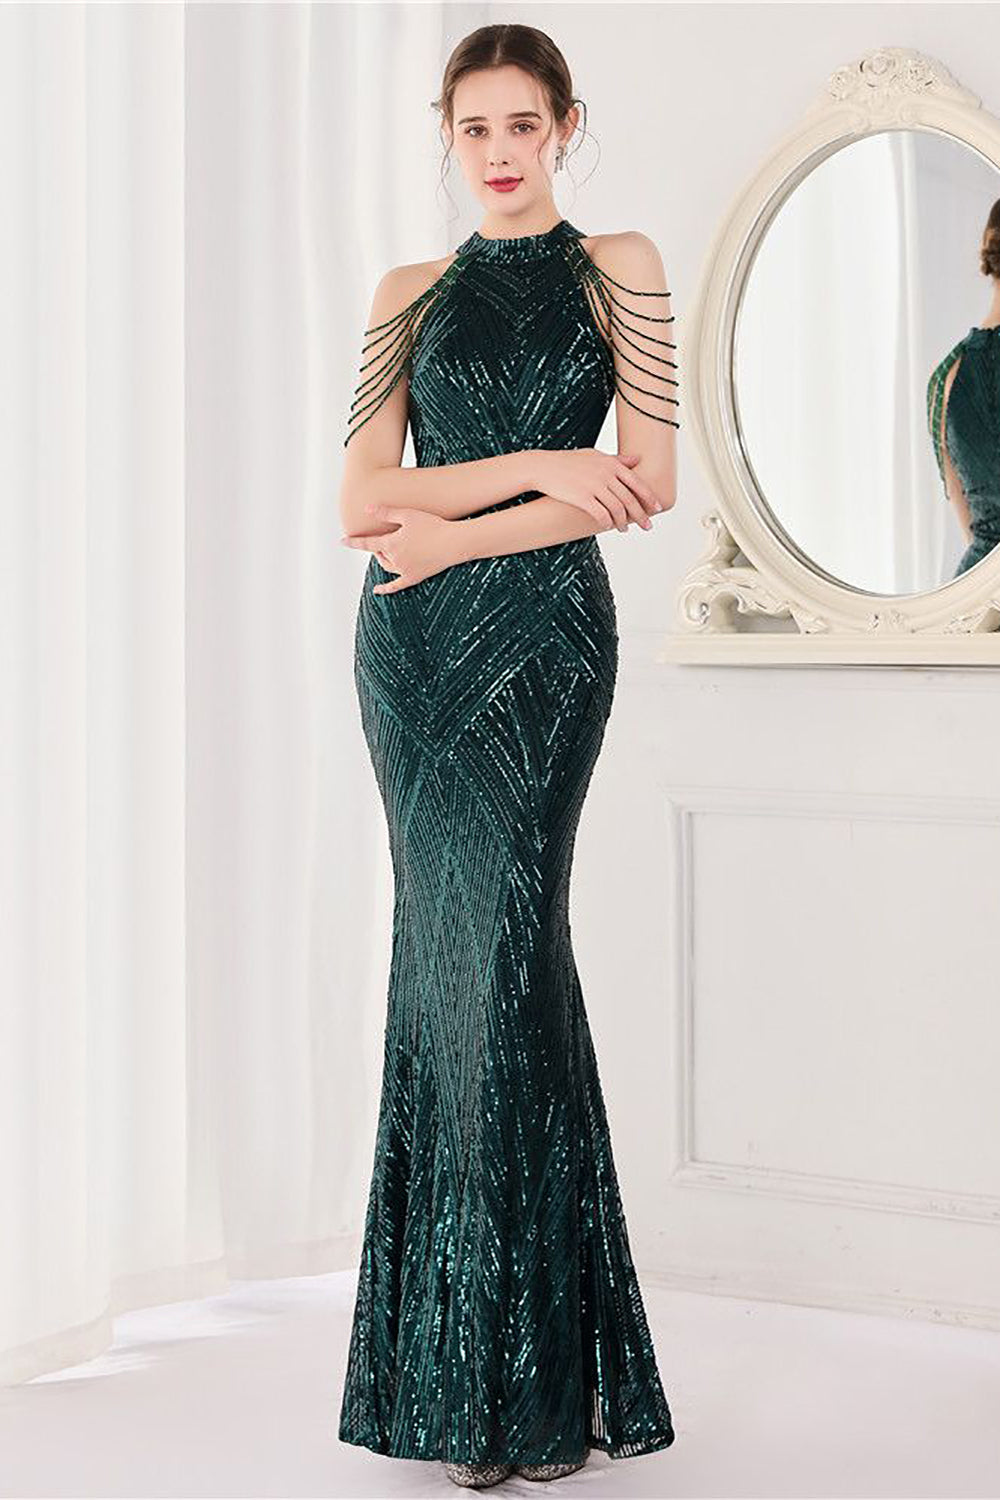 Mermaid Halter Dark Green Sequins Long Prom Dress